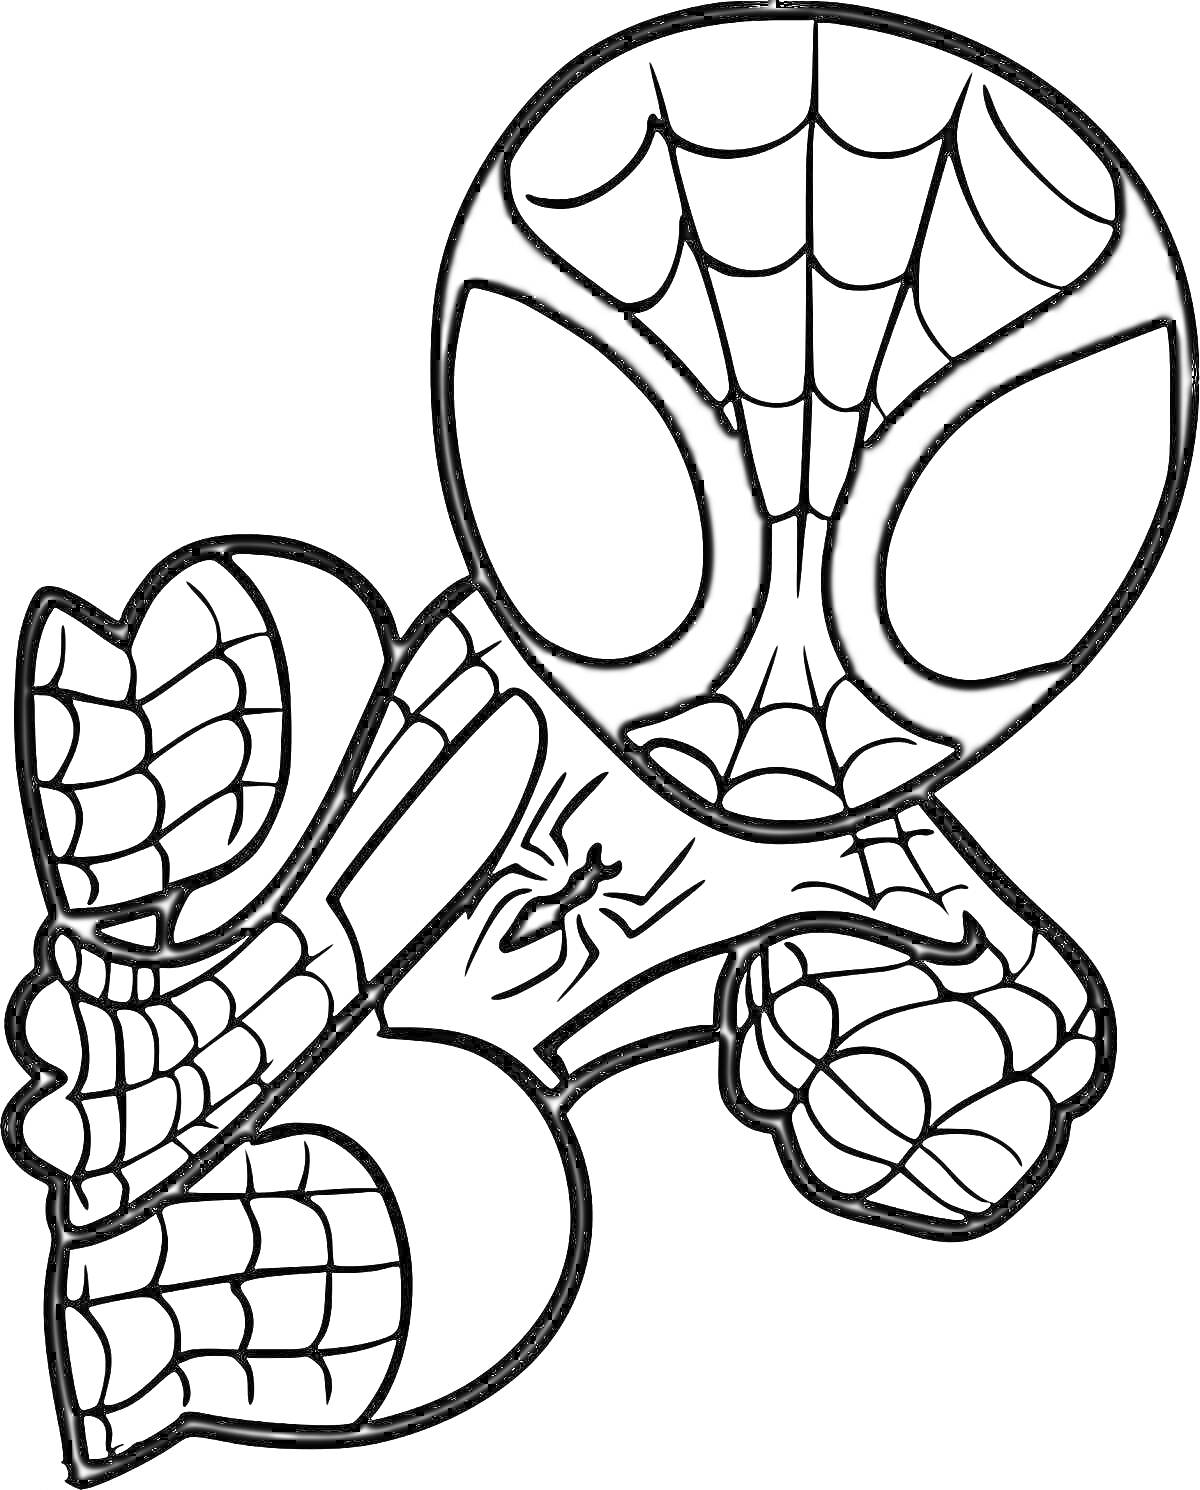 Раскраска Человек-паук в прыжке с паутиной и пауком на груди